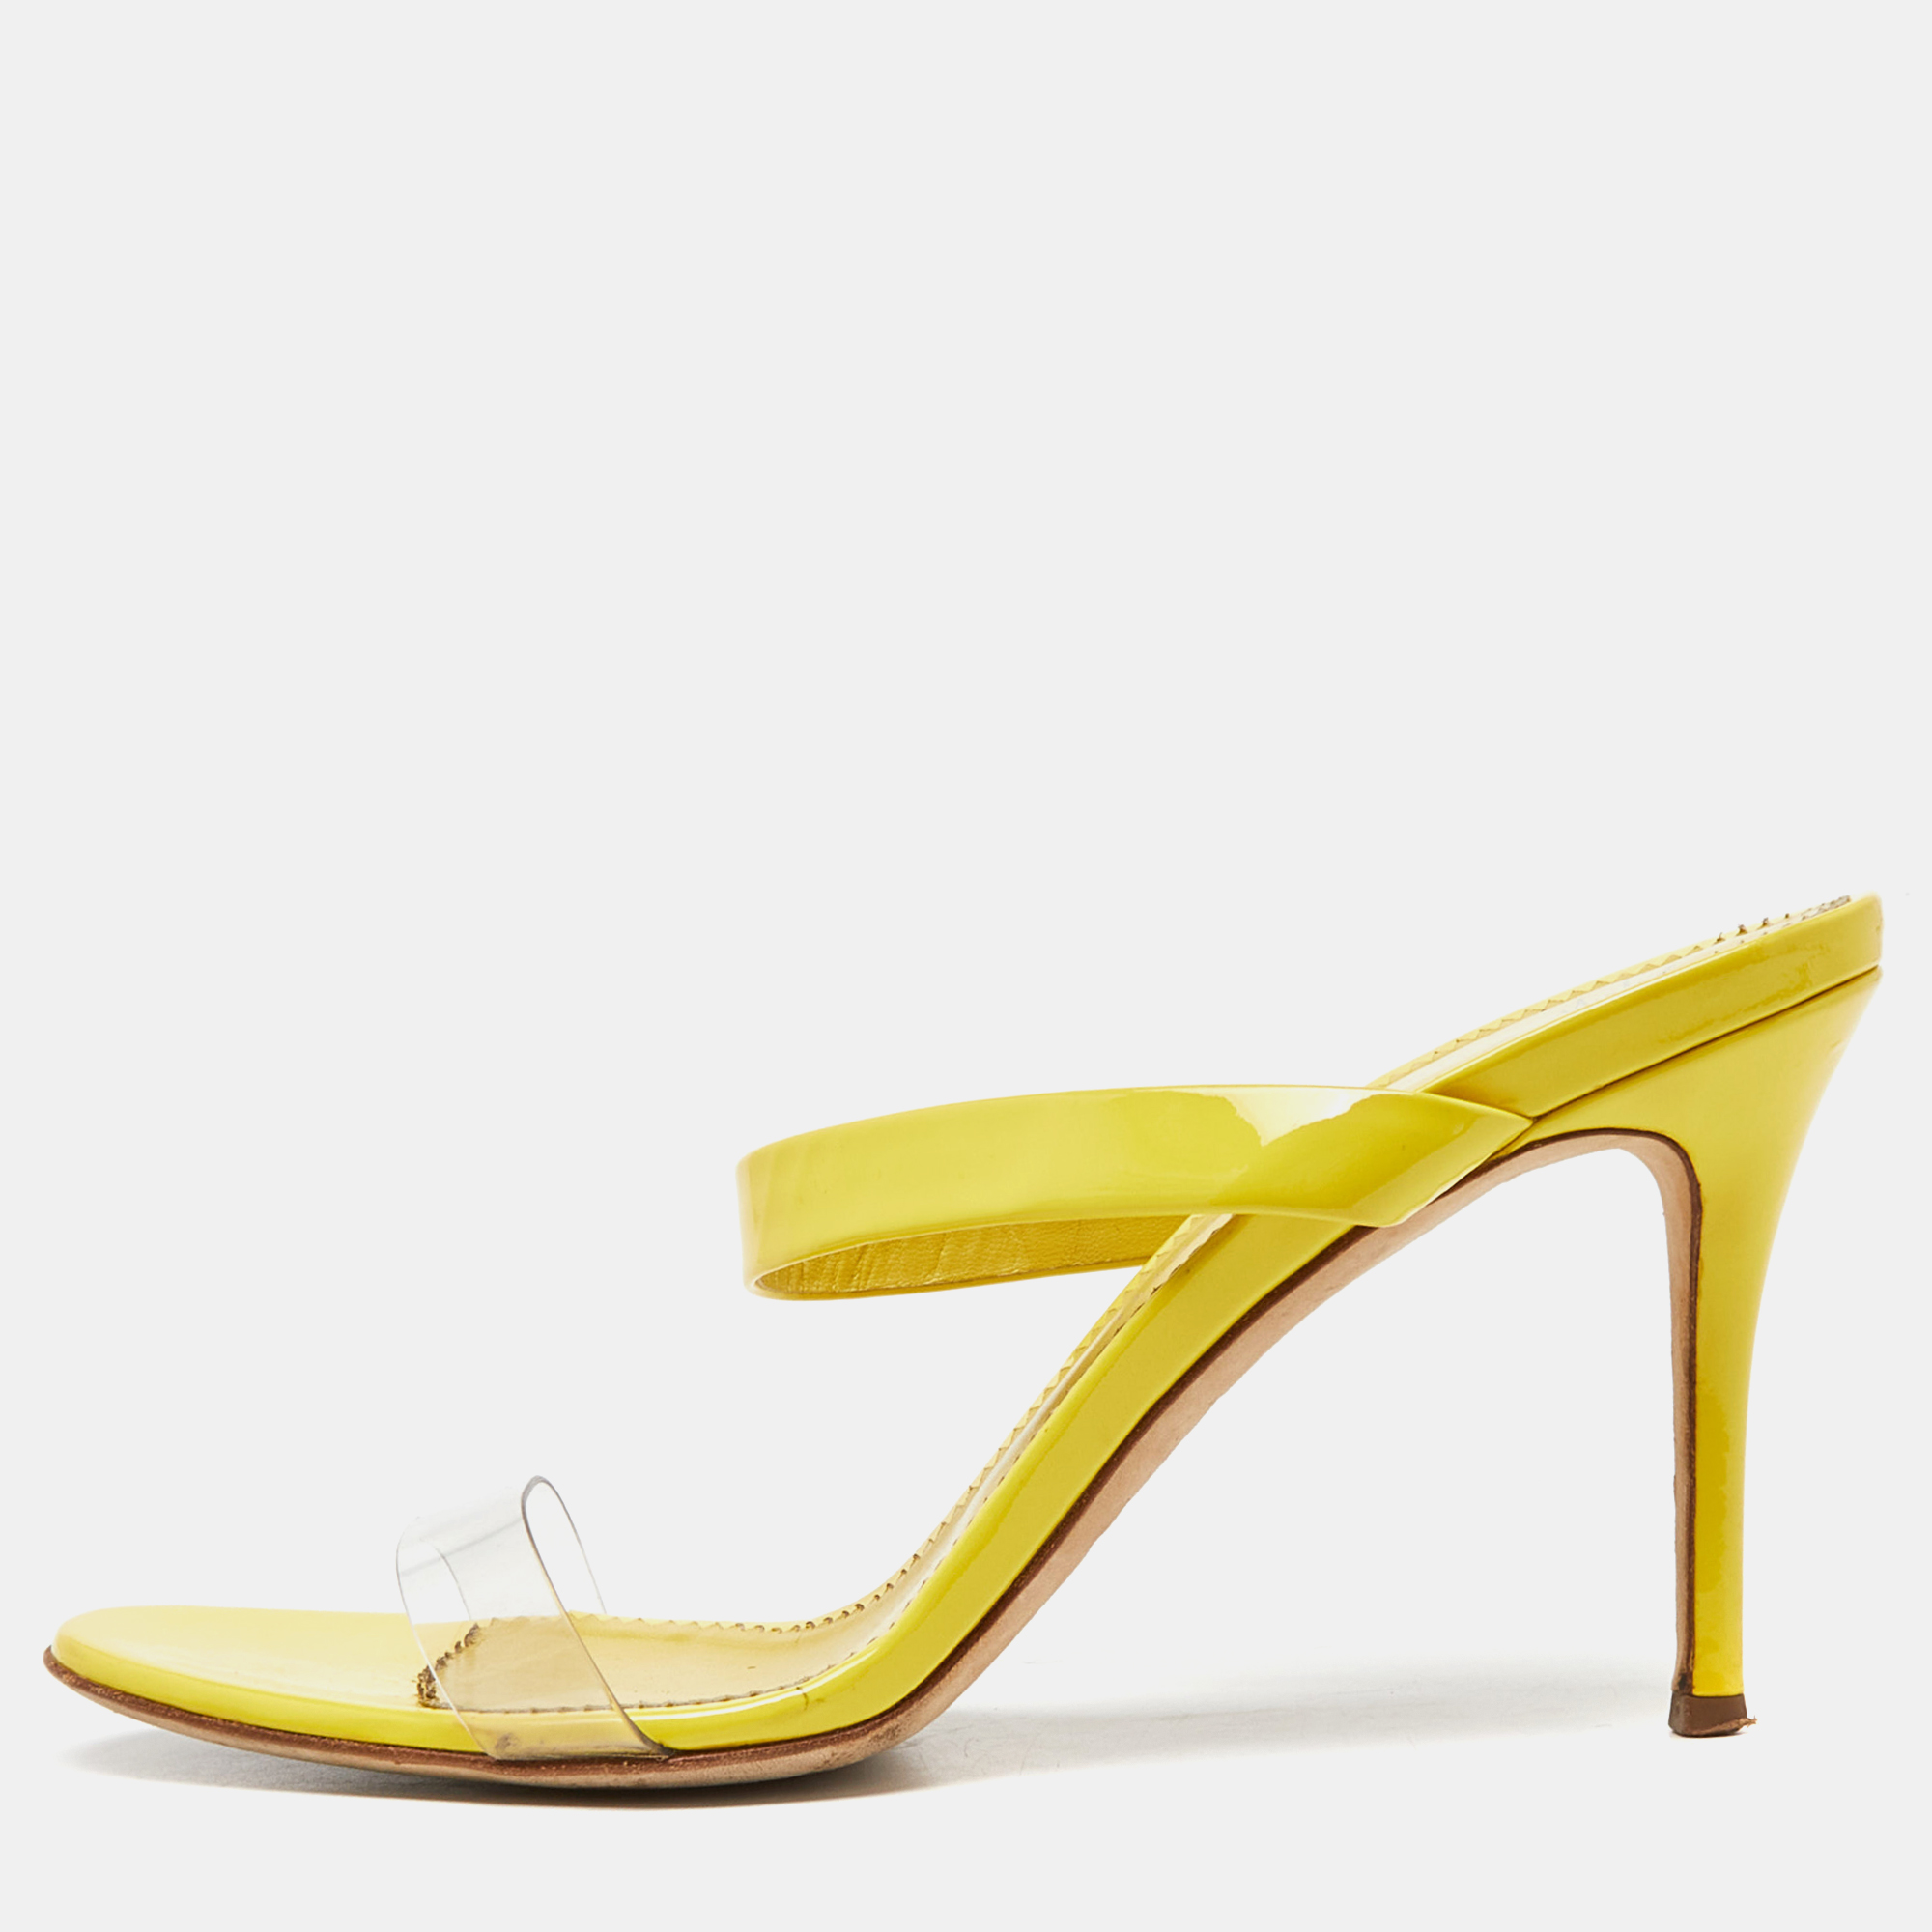 Giuseppe zanotti yellow patent leather slide sandals size 39